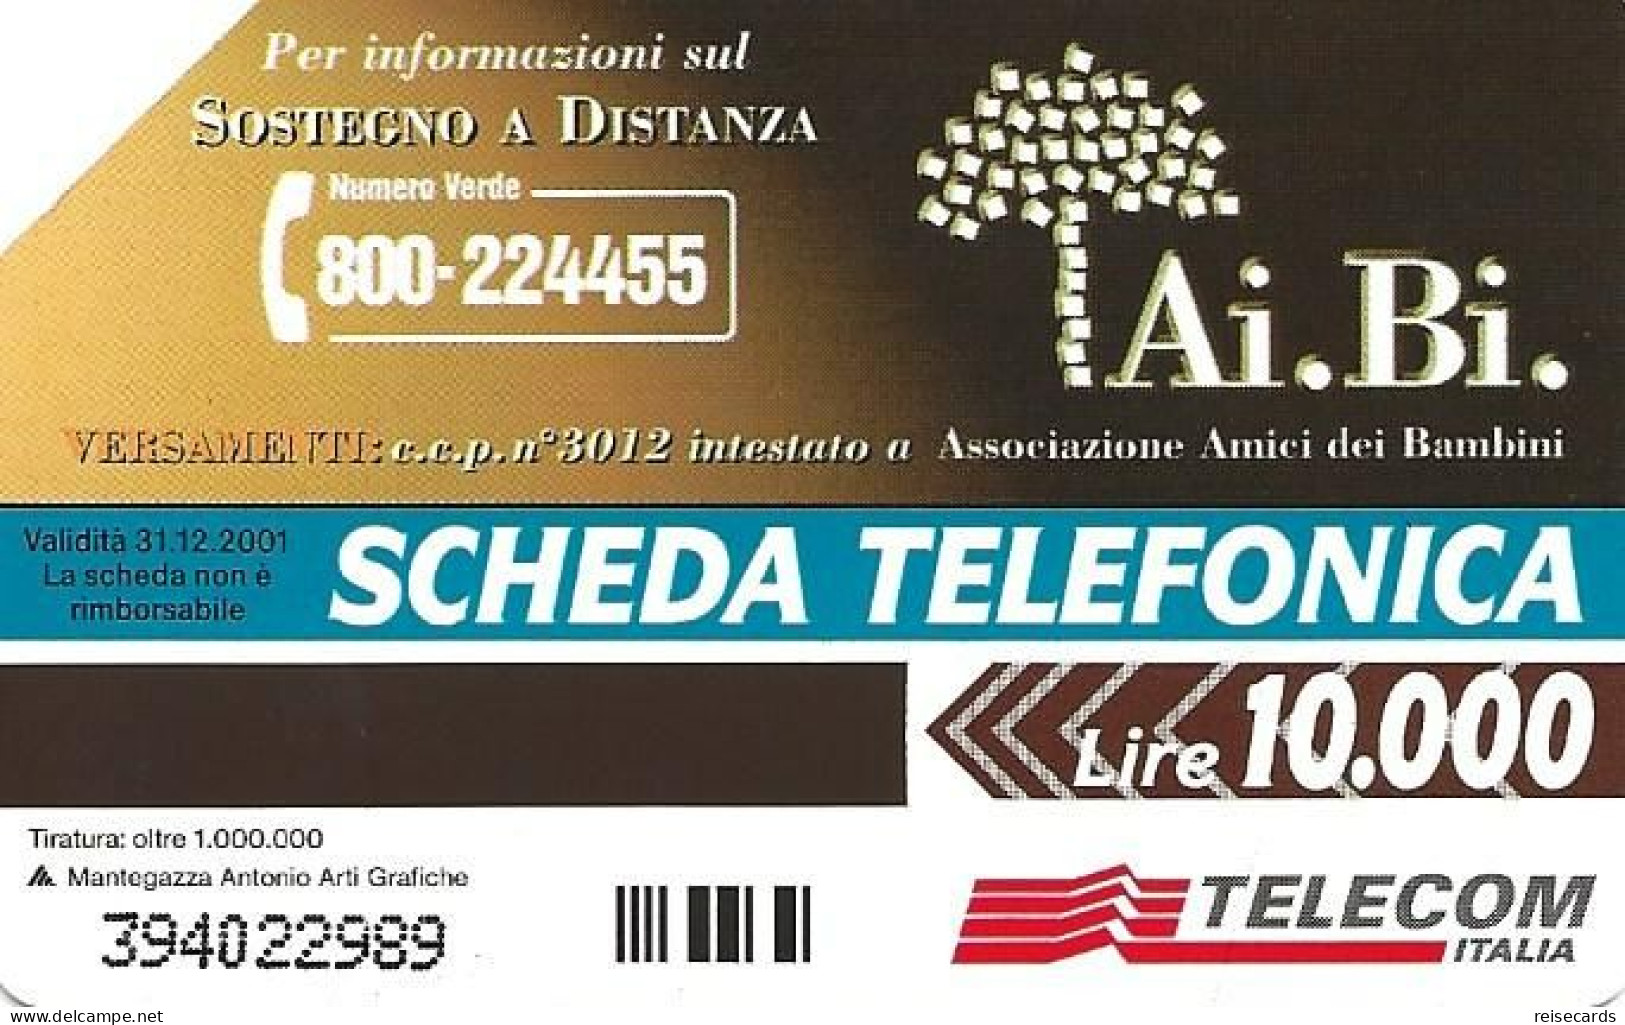 Italy: Telecom Italia - Ai.Bi. Associazione Amici Dei Bambini - Openbare Reclame